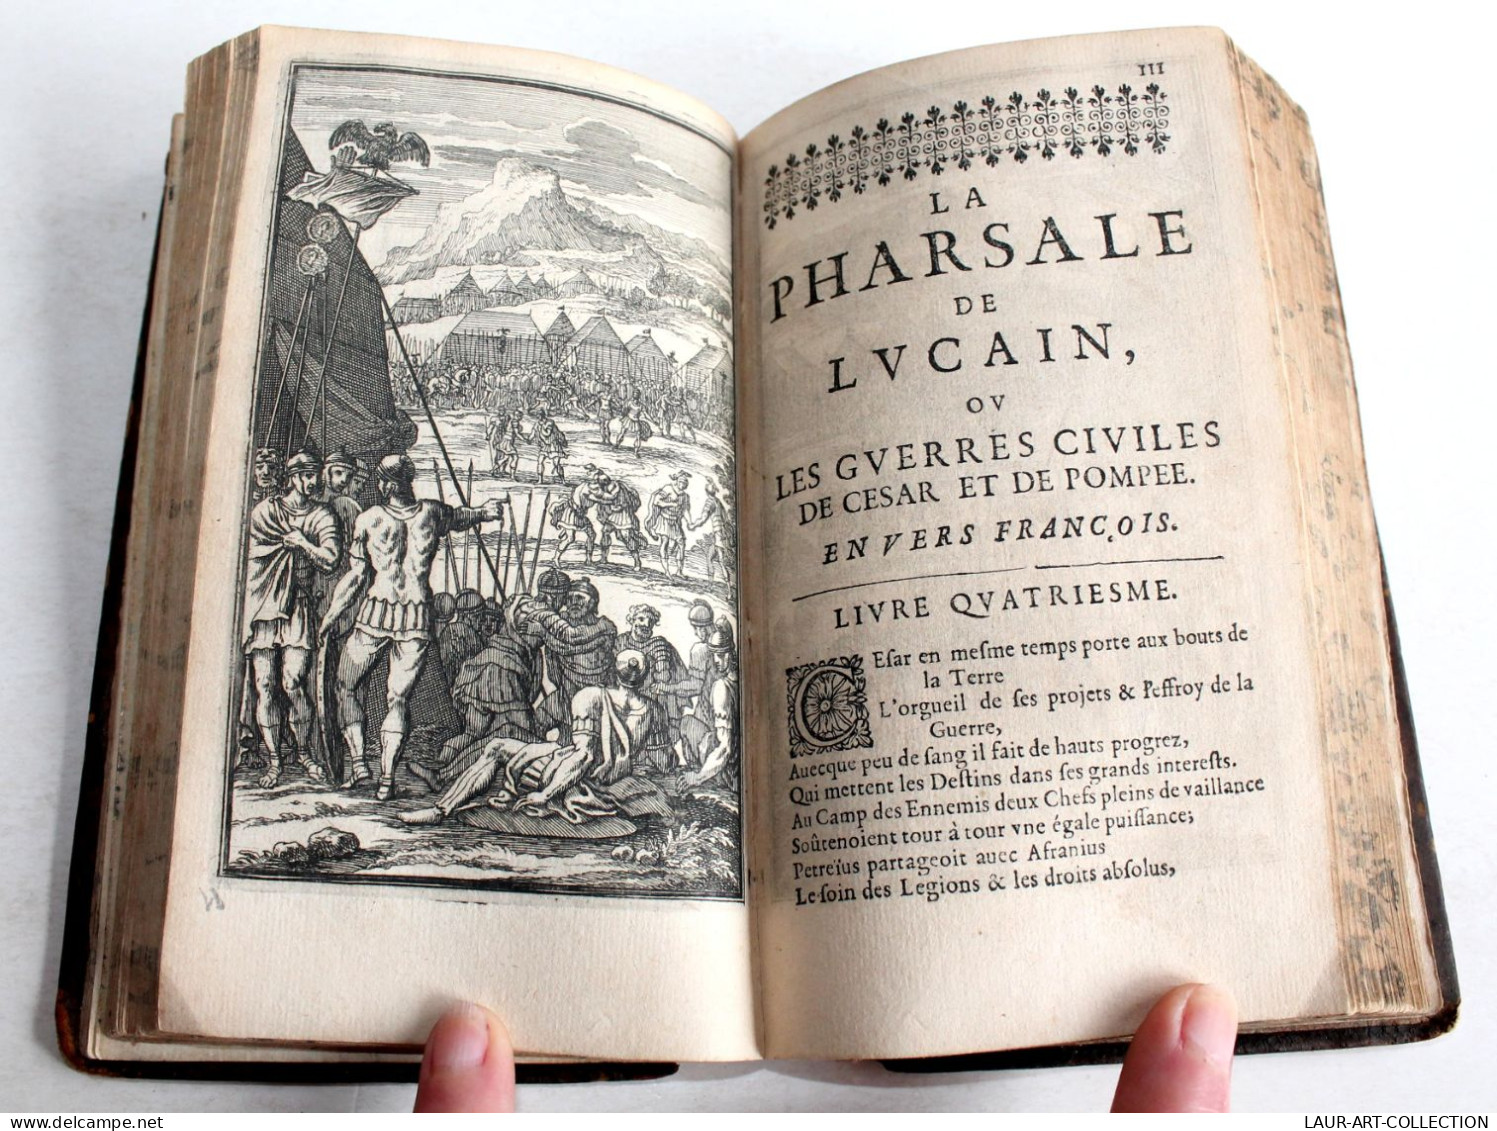 PHARSALE DE LUCAIN OU GUERRES CIVILES CESAR ET POMPEE DE BREBEUF 1657 RARE CARTE COULEUR, LIVRE XVIIe SIECLE (2204.4)